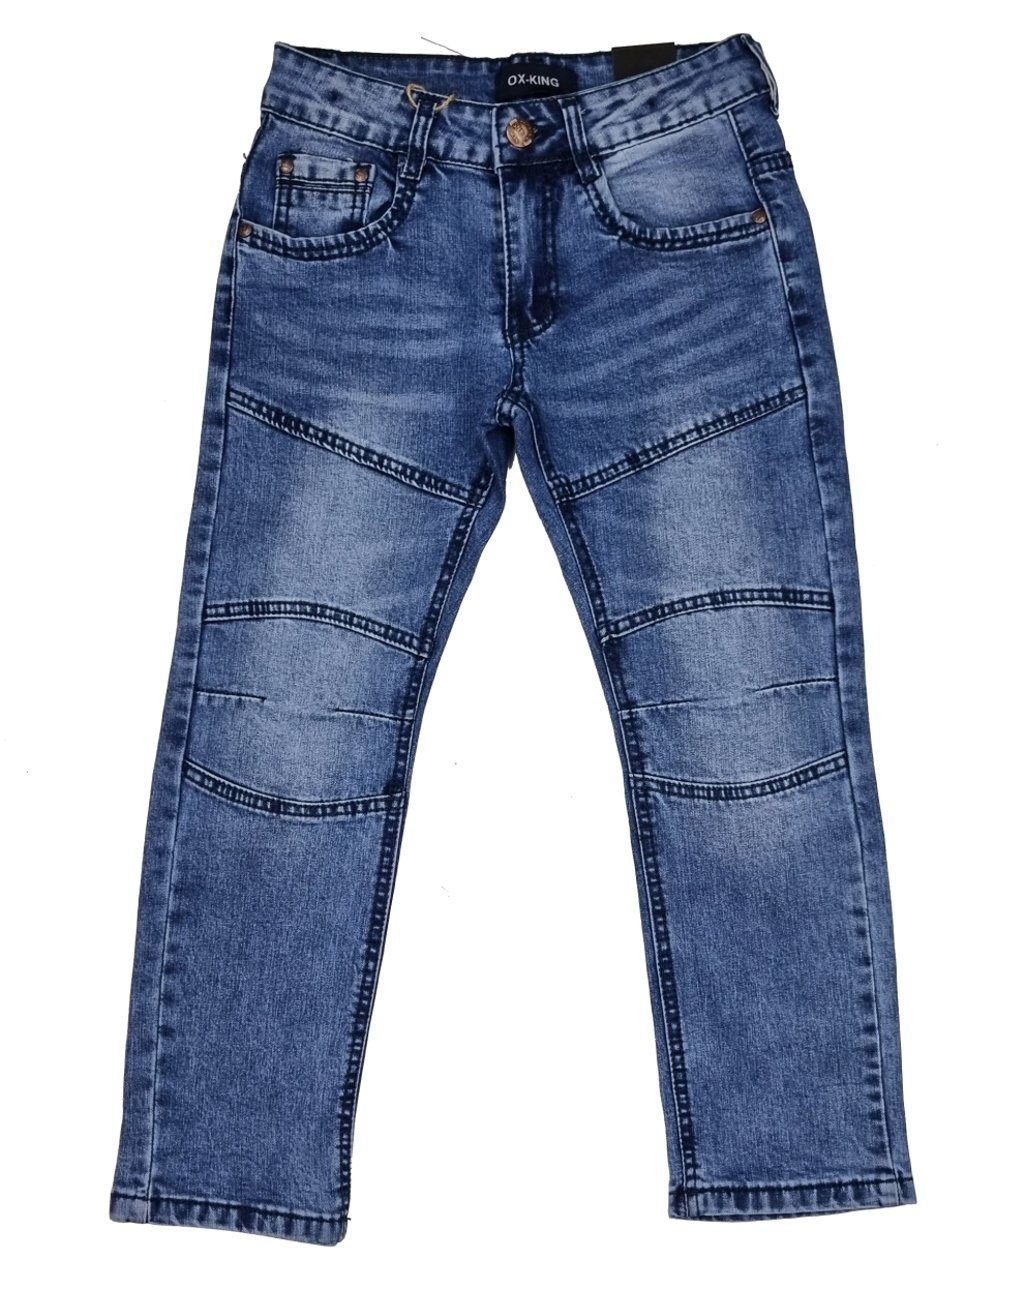 Jeans Jungen Kinderhose Fashion Boy J626 Jeans Hose Kinder Jeanshose, Bequeme